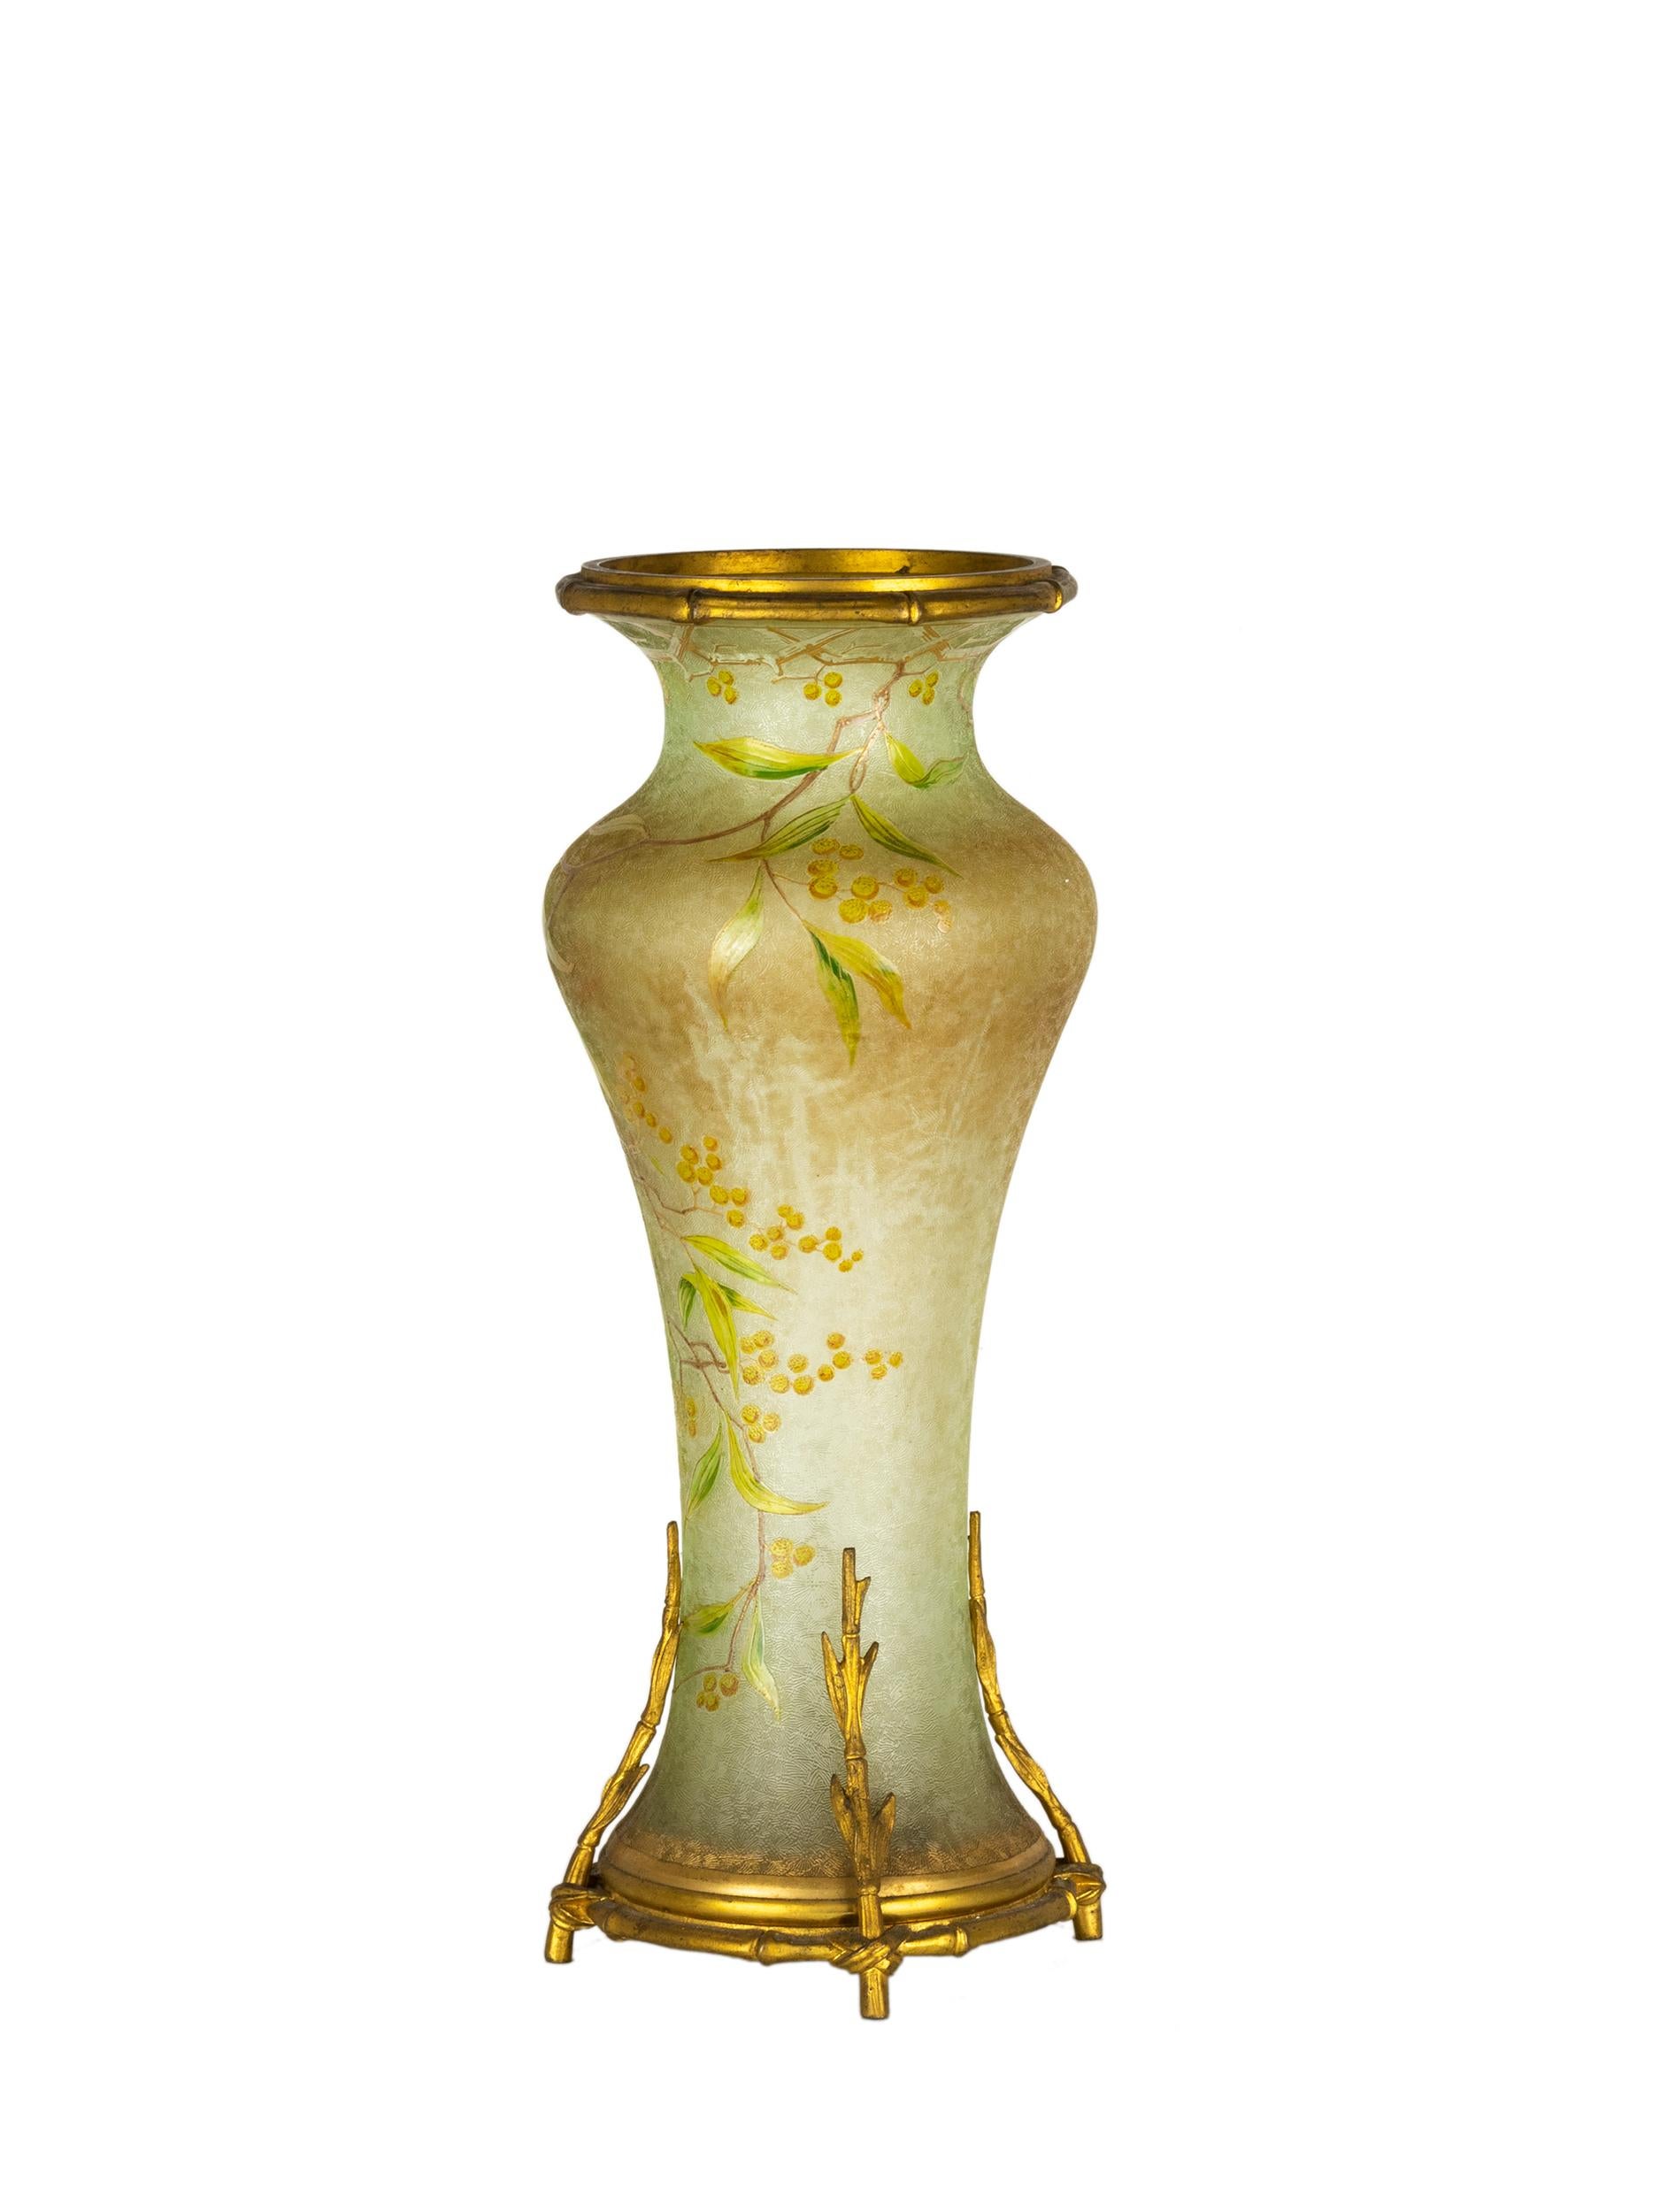 Un art nouveau extraordinaire  Vase bohémien en verre vert irisé avec incrustation de bronze doré par Wilhelm Kralik Sohn dans la région tchèque de la Šumava.



